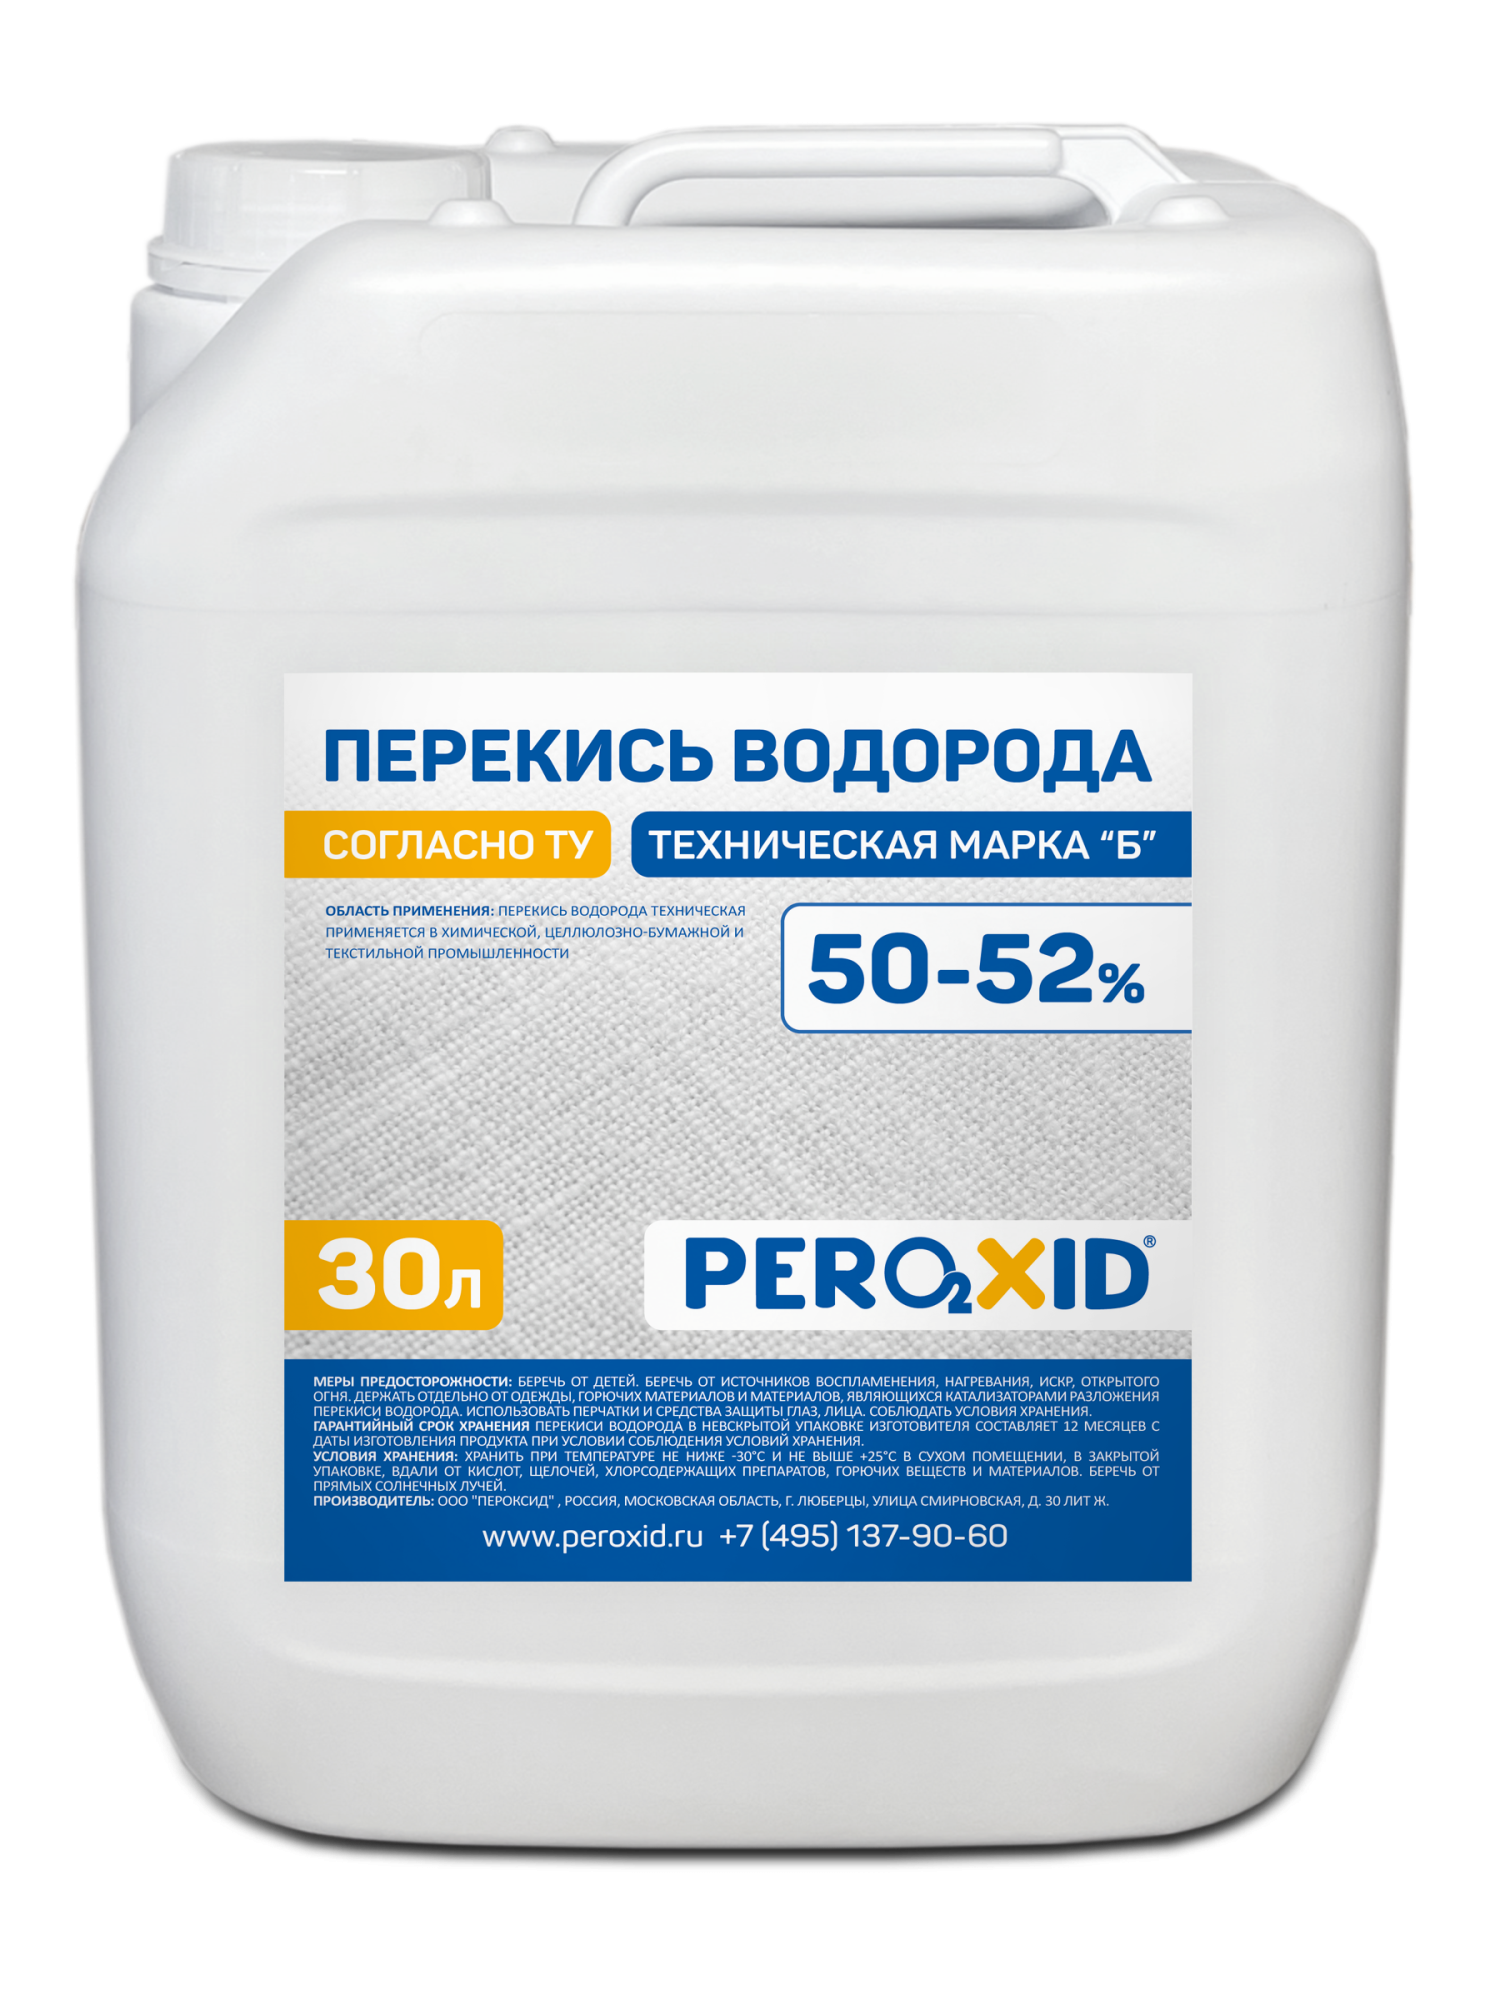 Перекись водорода техническая PEROXID 50-52% марка Б ТУ 2123-002-25665344-2008 30 л/34 кг